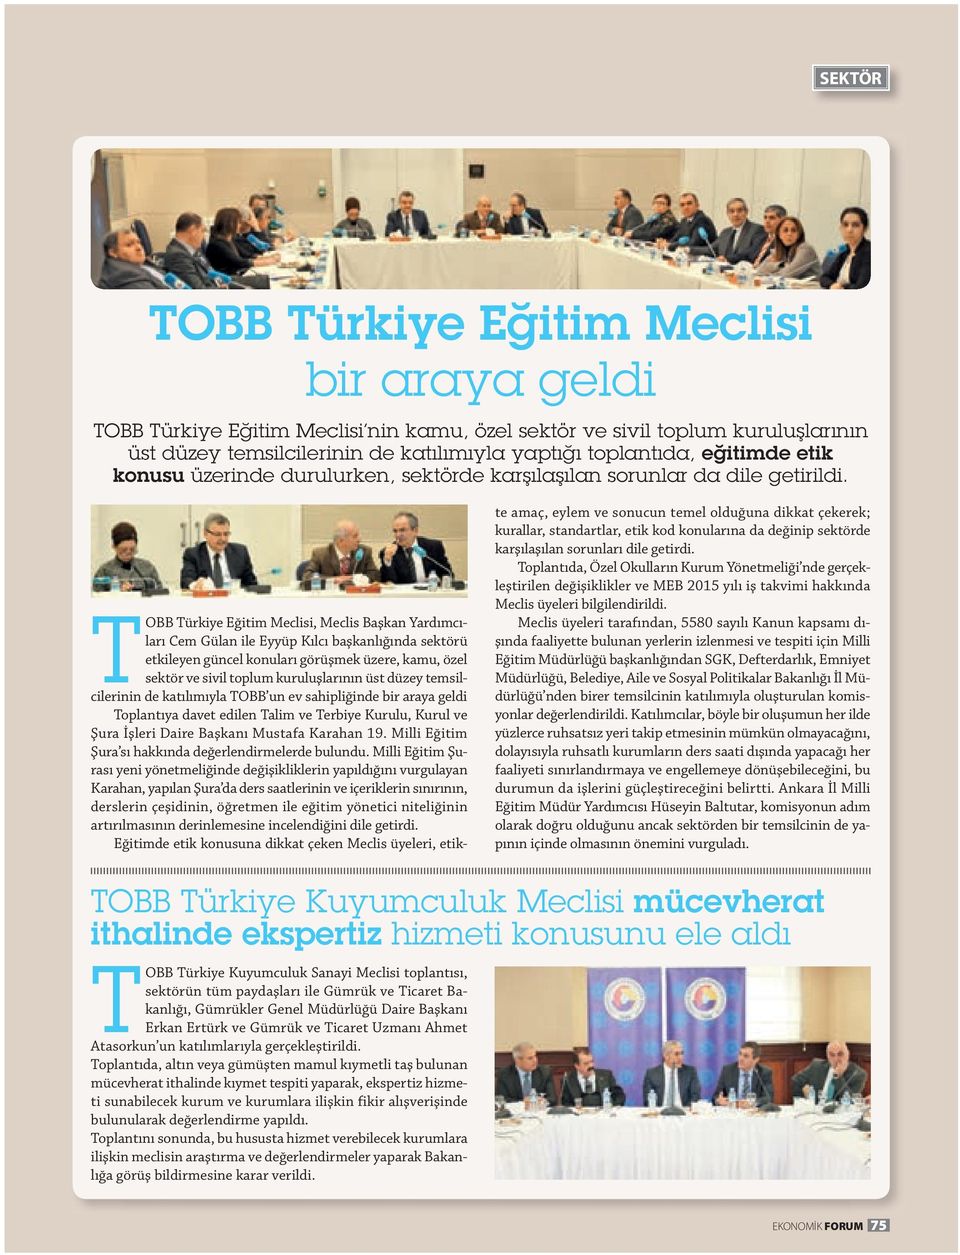 OBB ürkiye Eğitim Meclisi, Meclis Başkan Y ardımcıları Cem Gülan ile Eyyüp Kılcı başkanlığında sektörü etkileyen güncel konuları görüşmek üzere, kamu, özel sektör ve sivil toplum kuruluşlarının üst